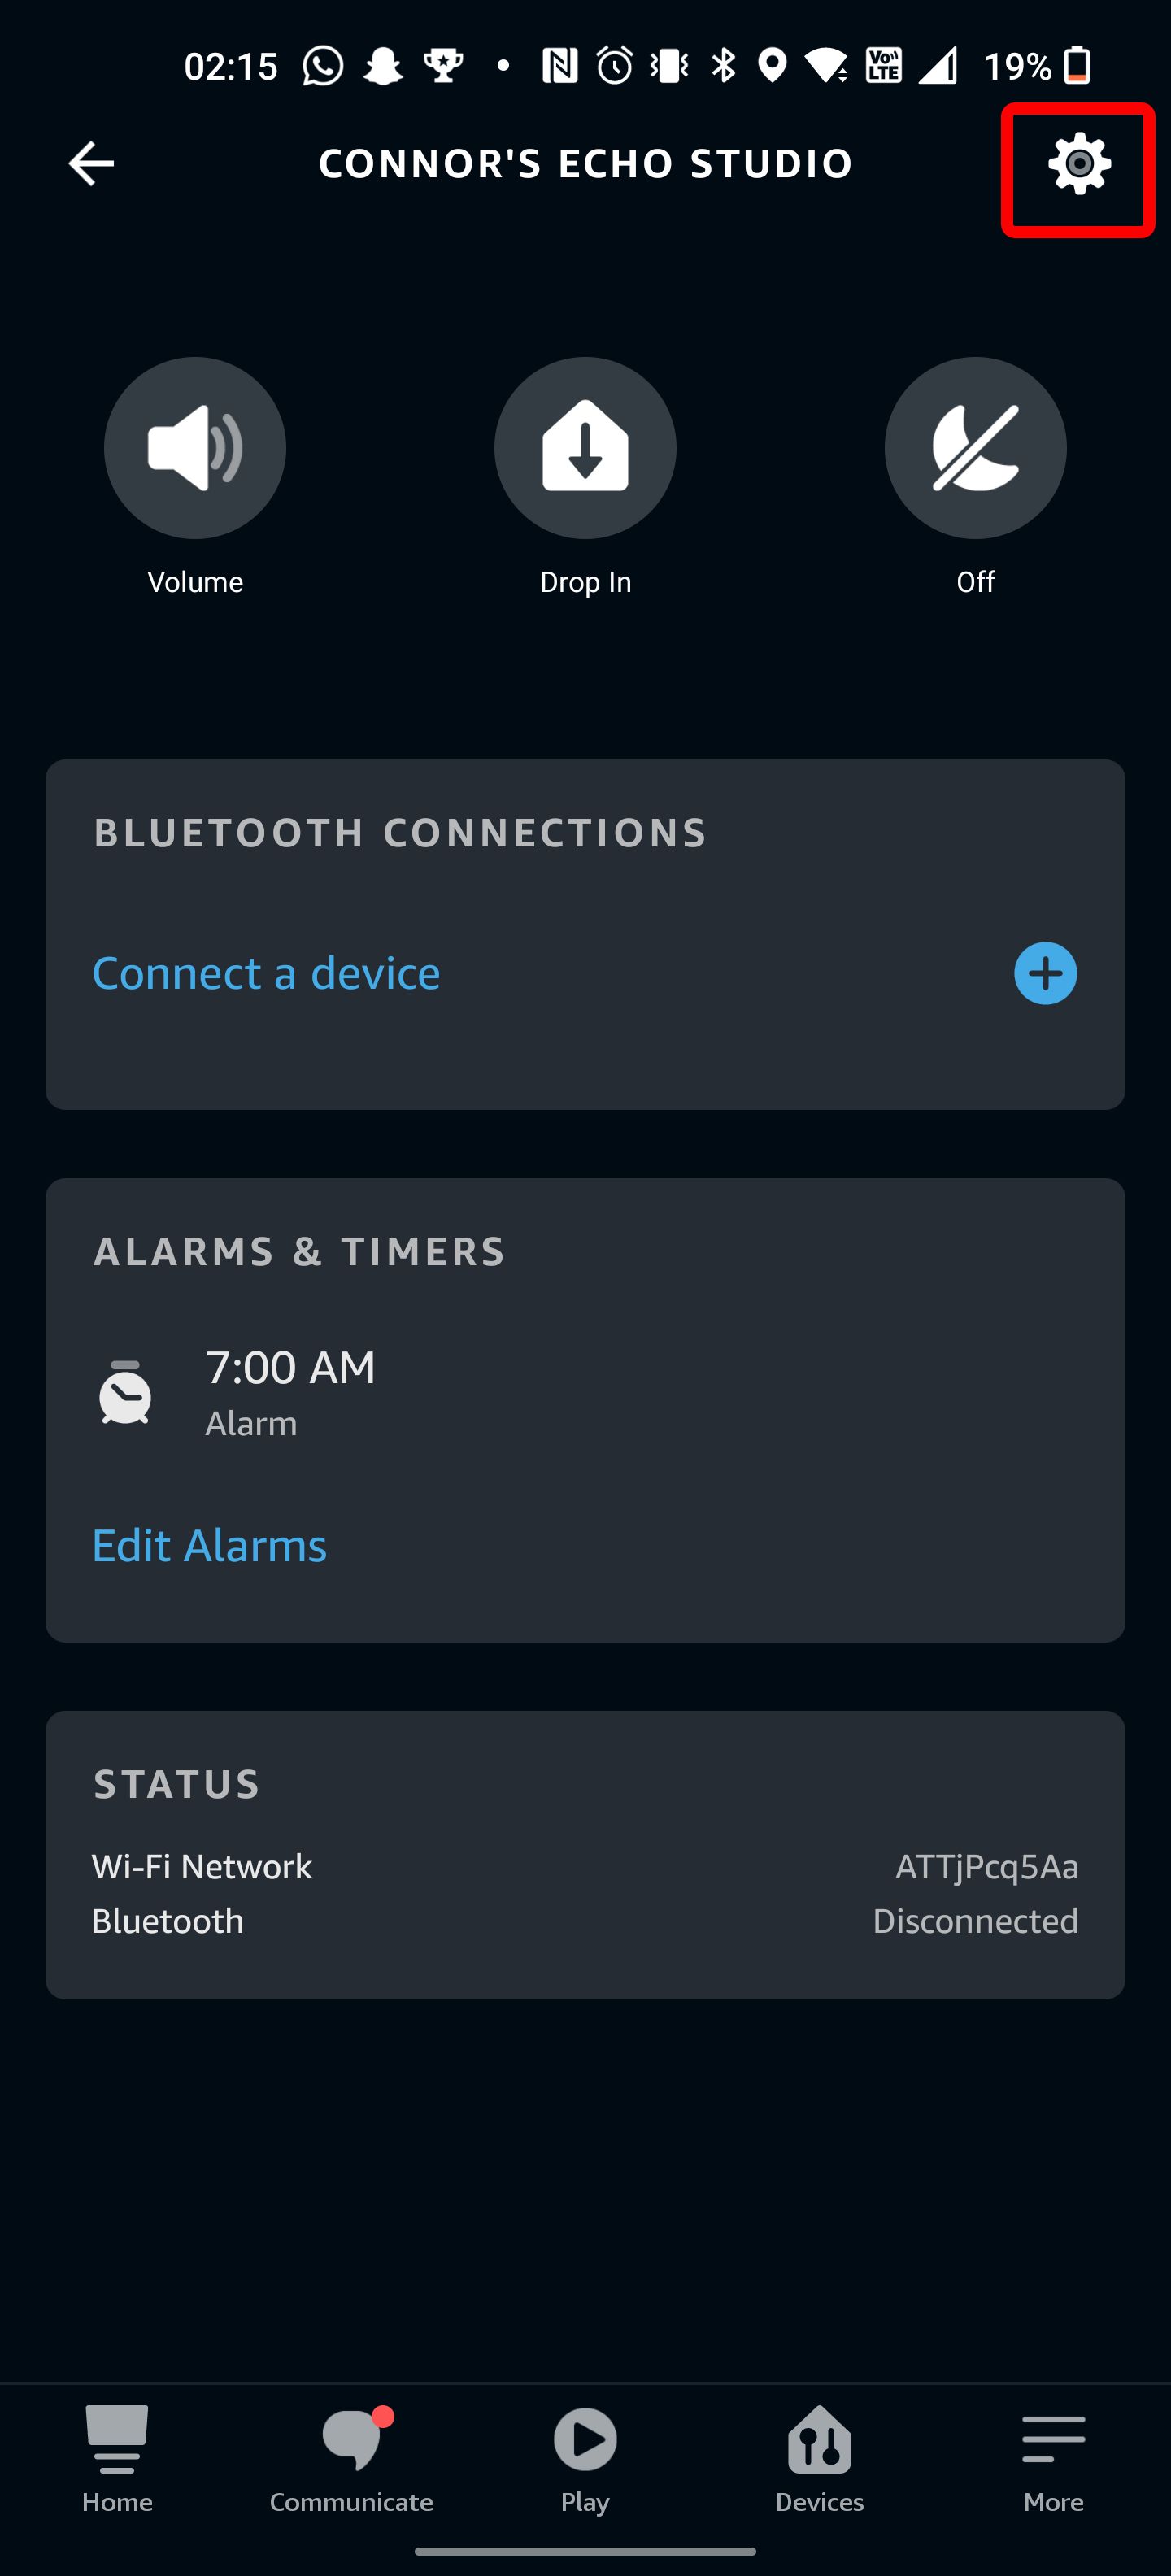 The Alexa app device settings menu.